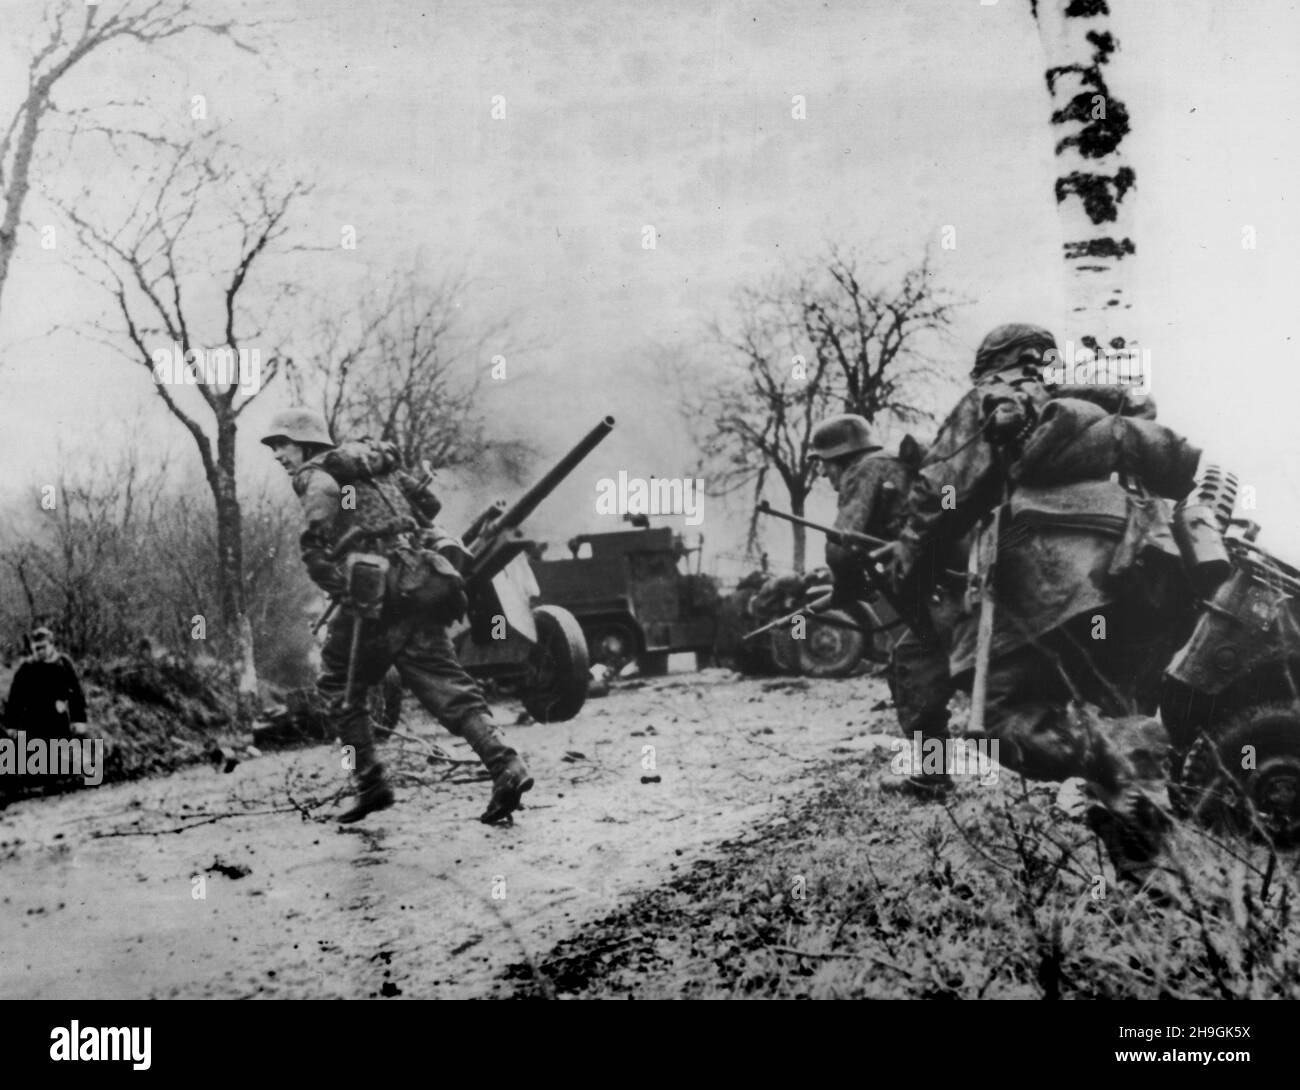 POTEAU, BELGIQUE - 18 décembre 1944 - cette image capturée des Nazis montre les soldats nazis Panzergrenadier-SS Kampfgruppe Hansen en action pendant Banque D'Images